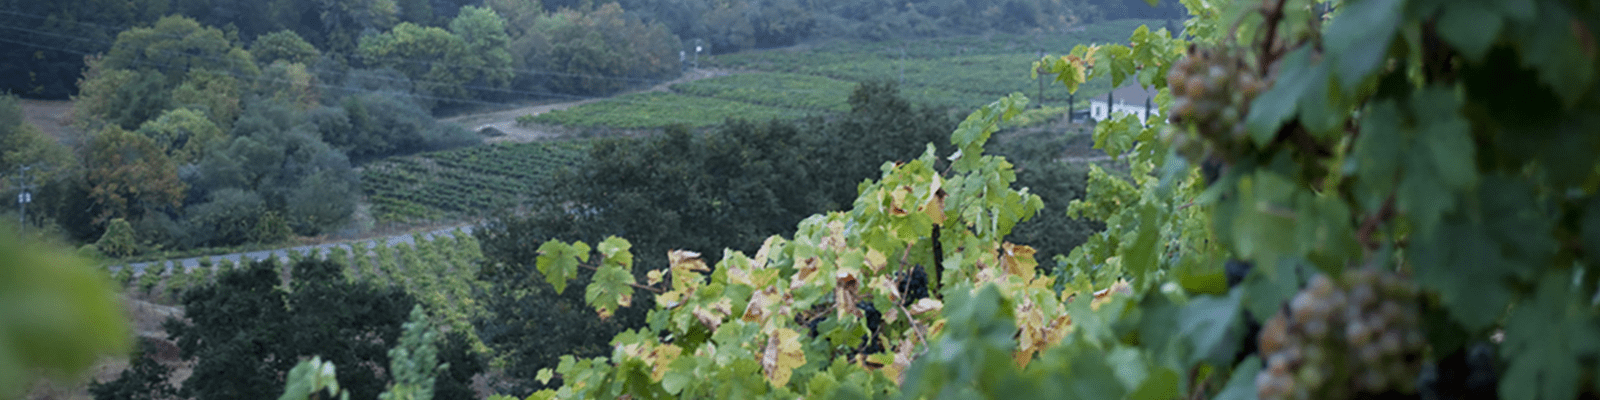 Martinelli Muscat vineyard